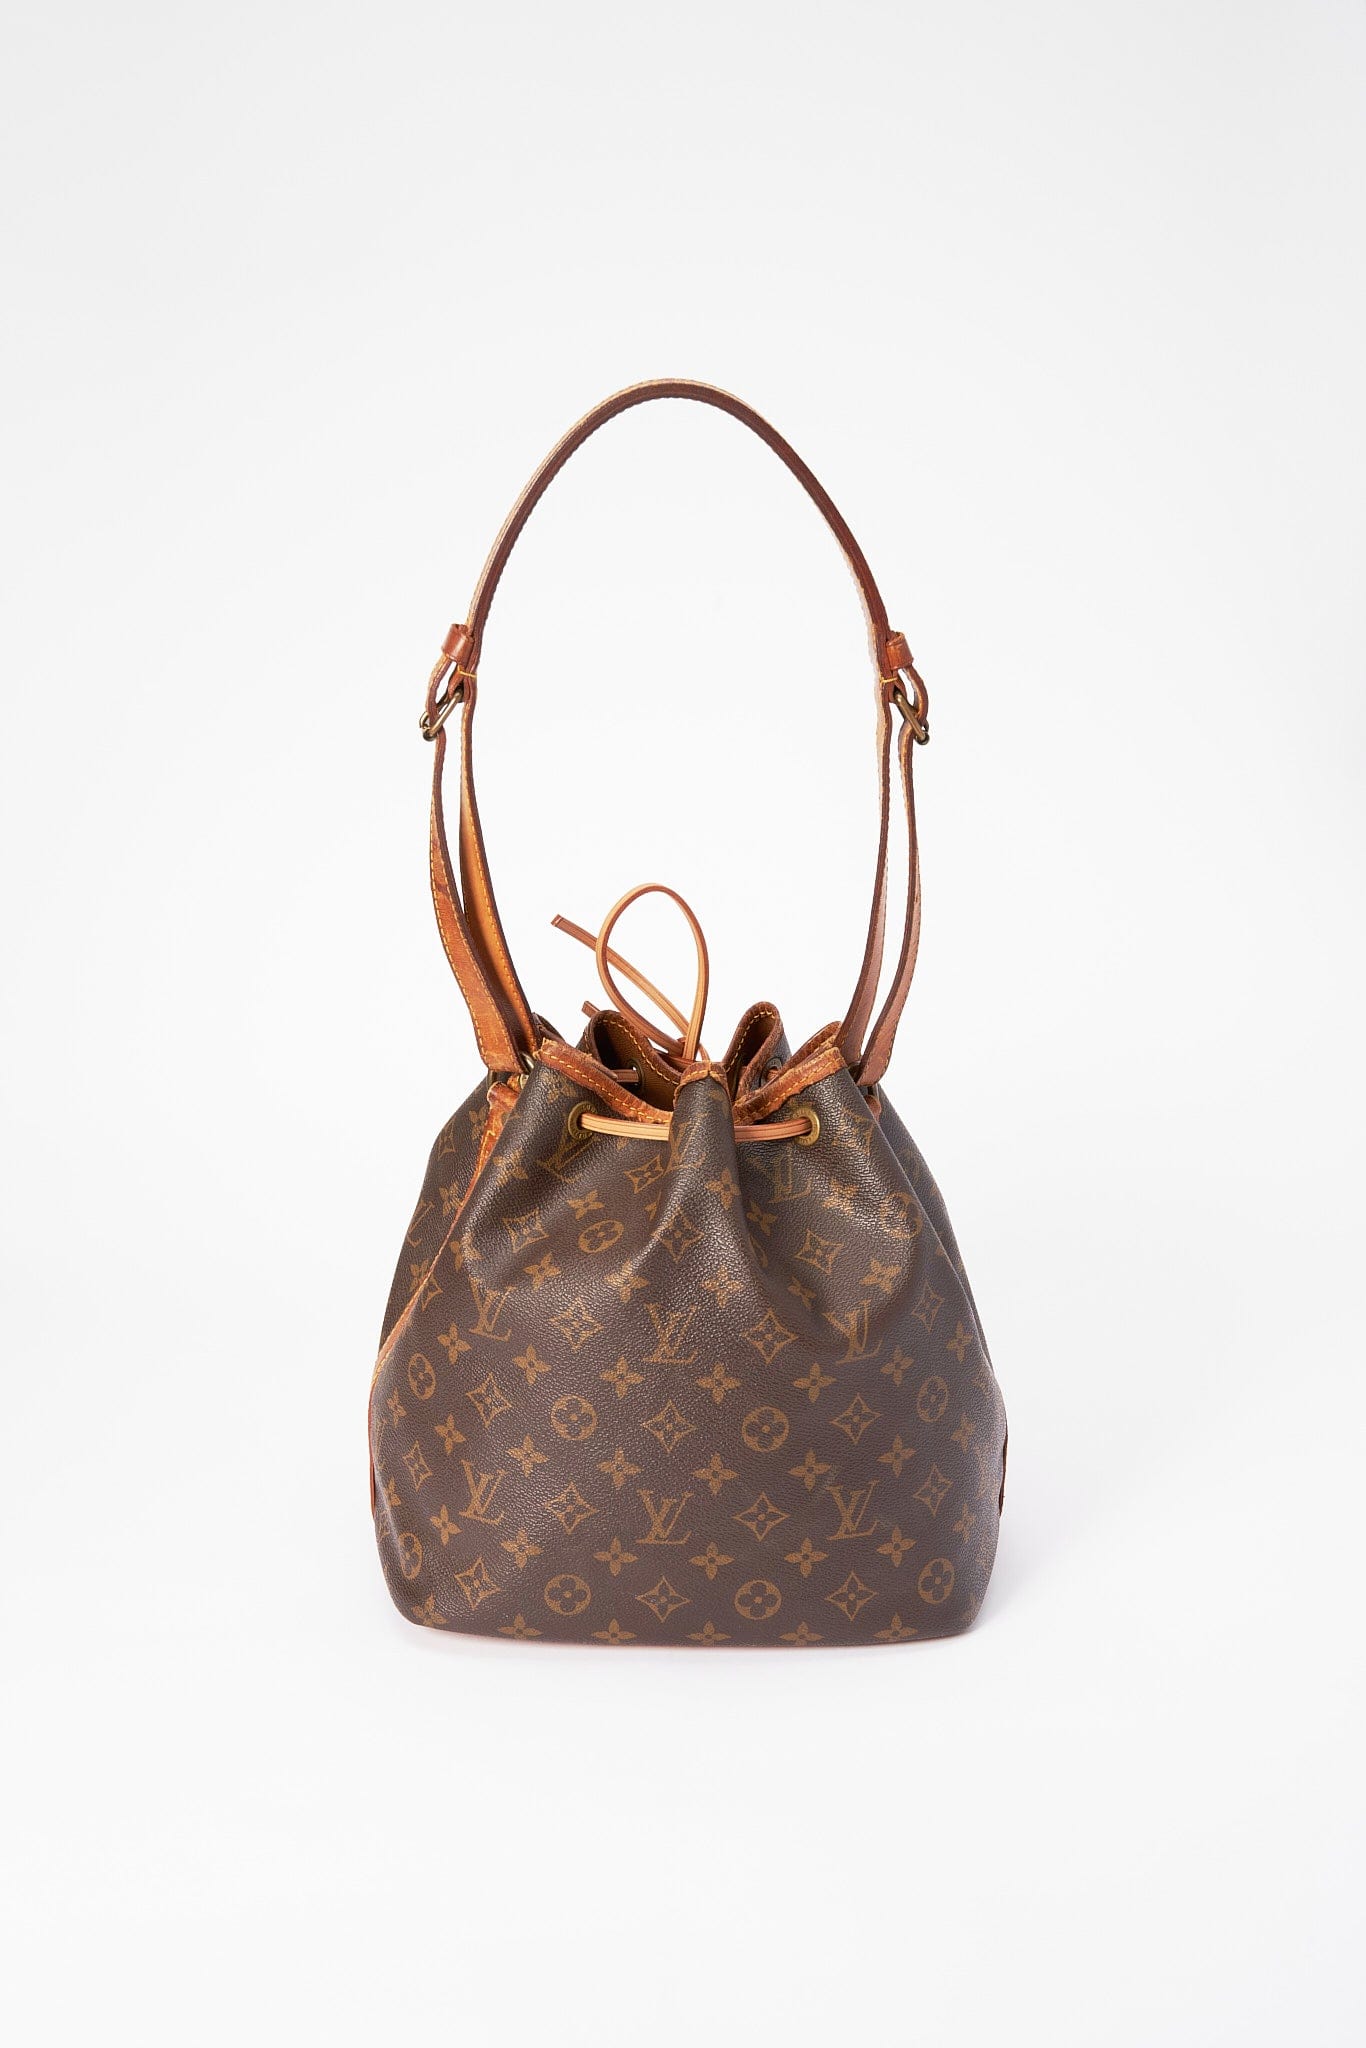 Louis Vuitton Monogram Canvas Petit Bucket Bag, Pre Loved